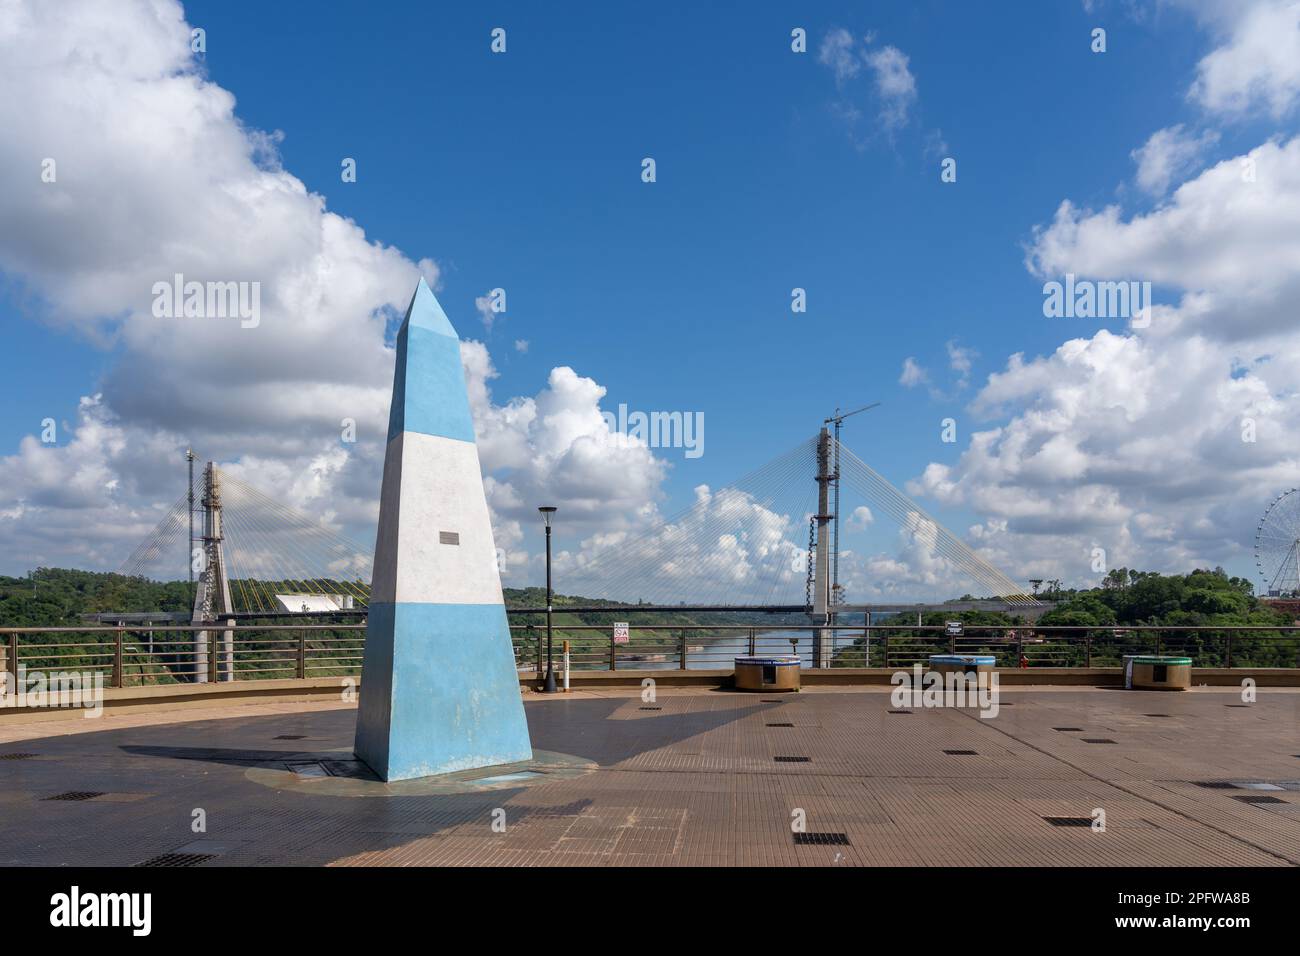 El obelisco argentino en Triple Frontera en Puerto Iguazú, Argentina, un área tri-fronteriza a lo largo del cruce de Argentina, Brasil y Paraguay. Foto de stock